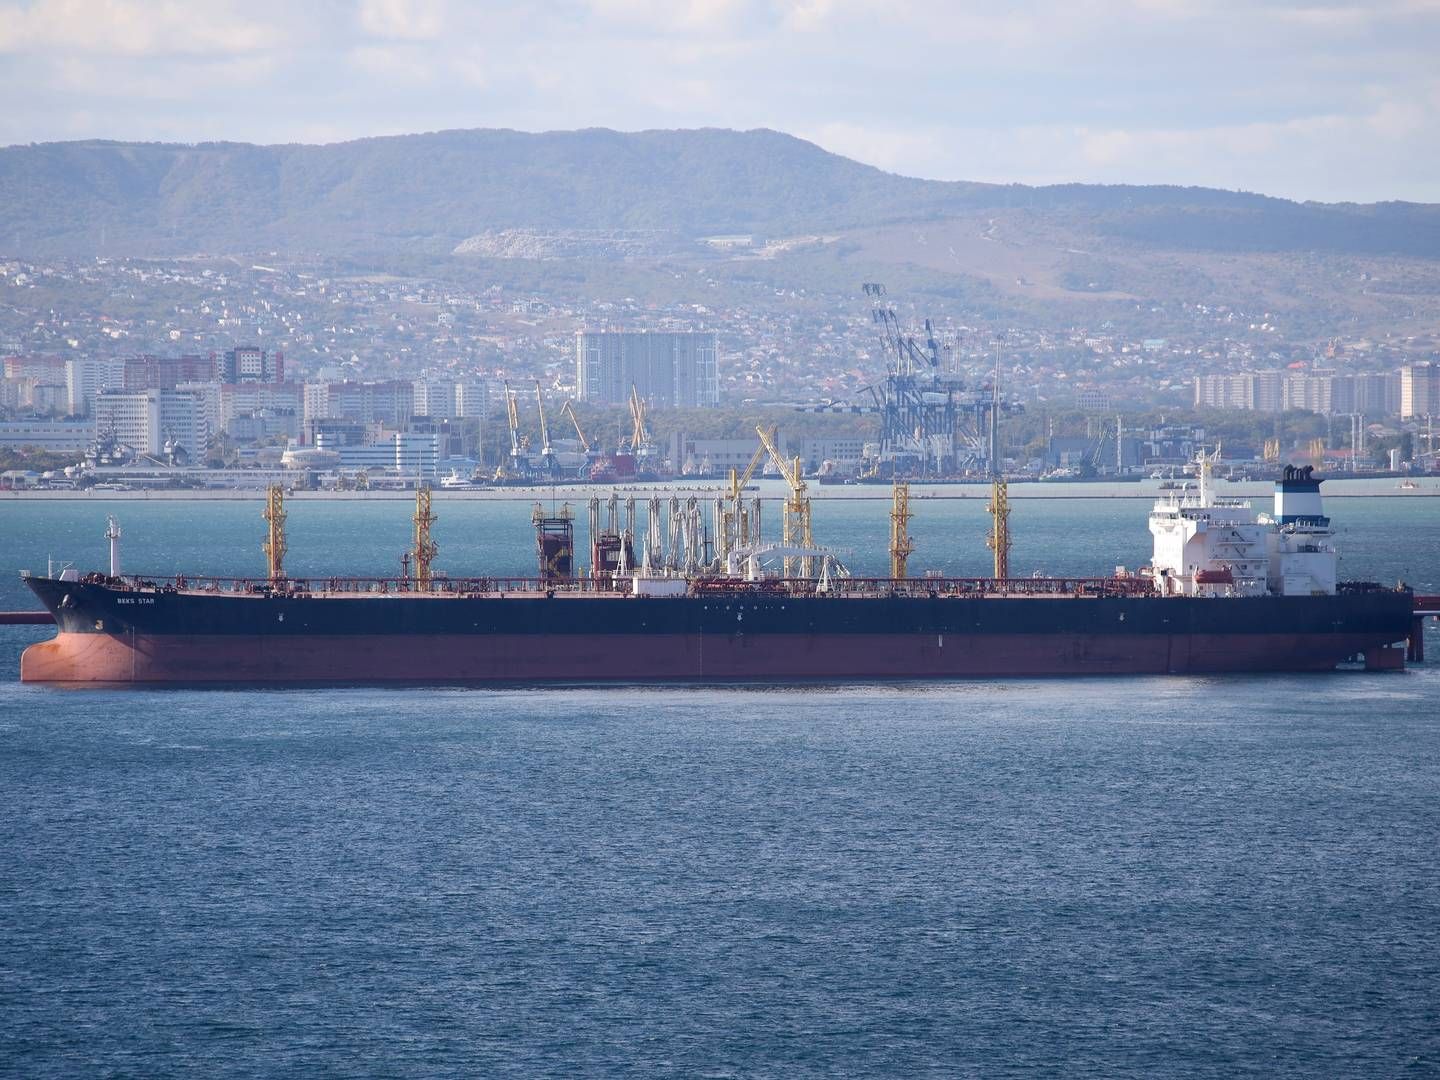 Blokeringen af skibe ville skulle ske under FN-regler, som giver lande mulighed for at tjekke skibe af frygt for, at de kan udgøre en miljøtrussel. Arkivfoto af tankskib i Rusland. | Foto: Uncredited/AP/Ritzau Scanpix